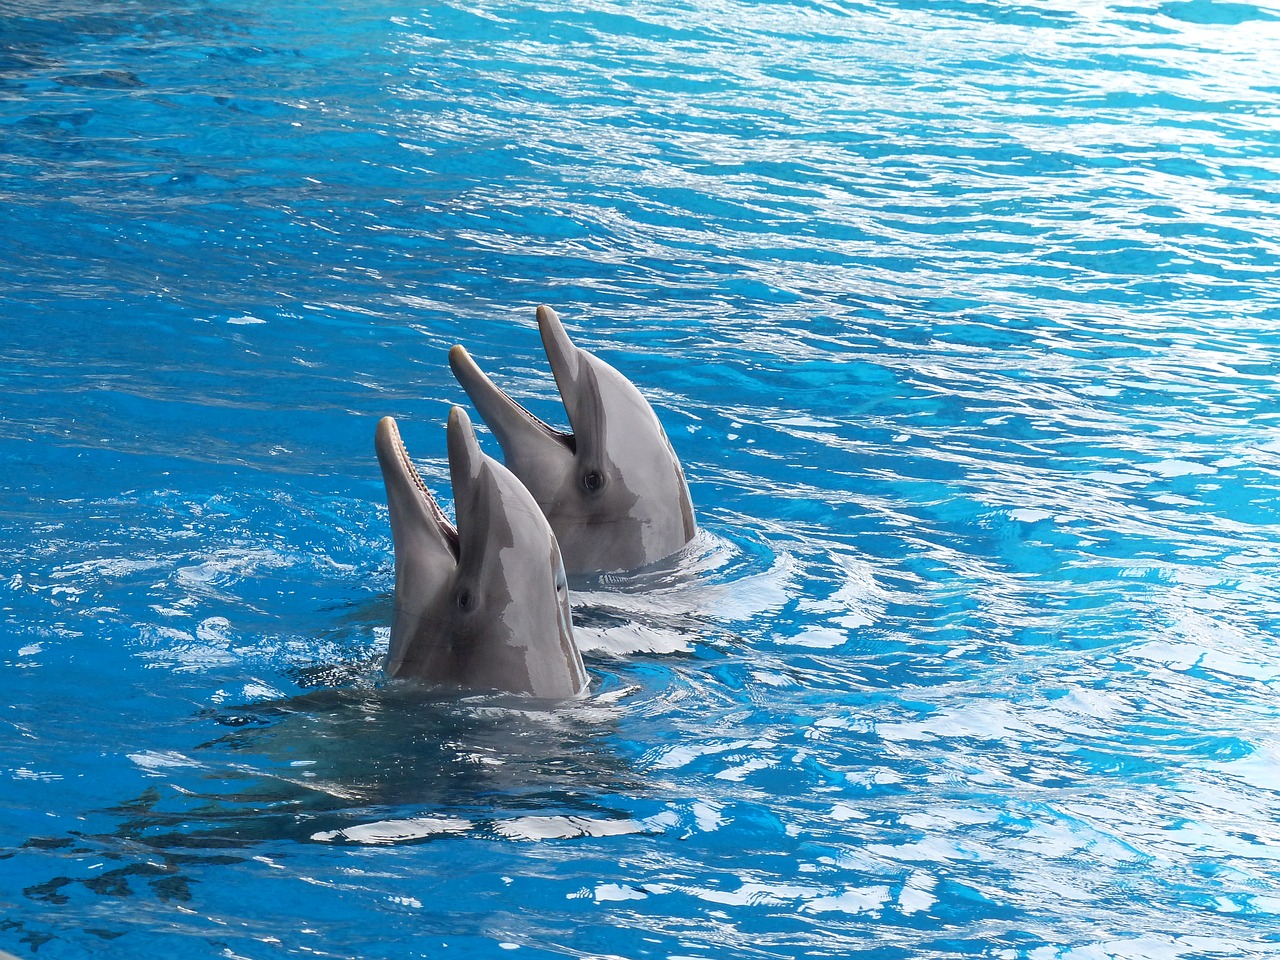 Traduction : l’Iran s’oppose au développement des parcs qui exploitent les dauphins